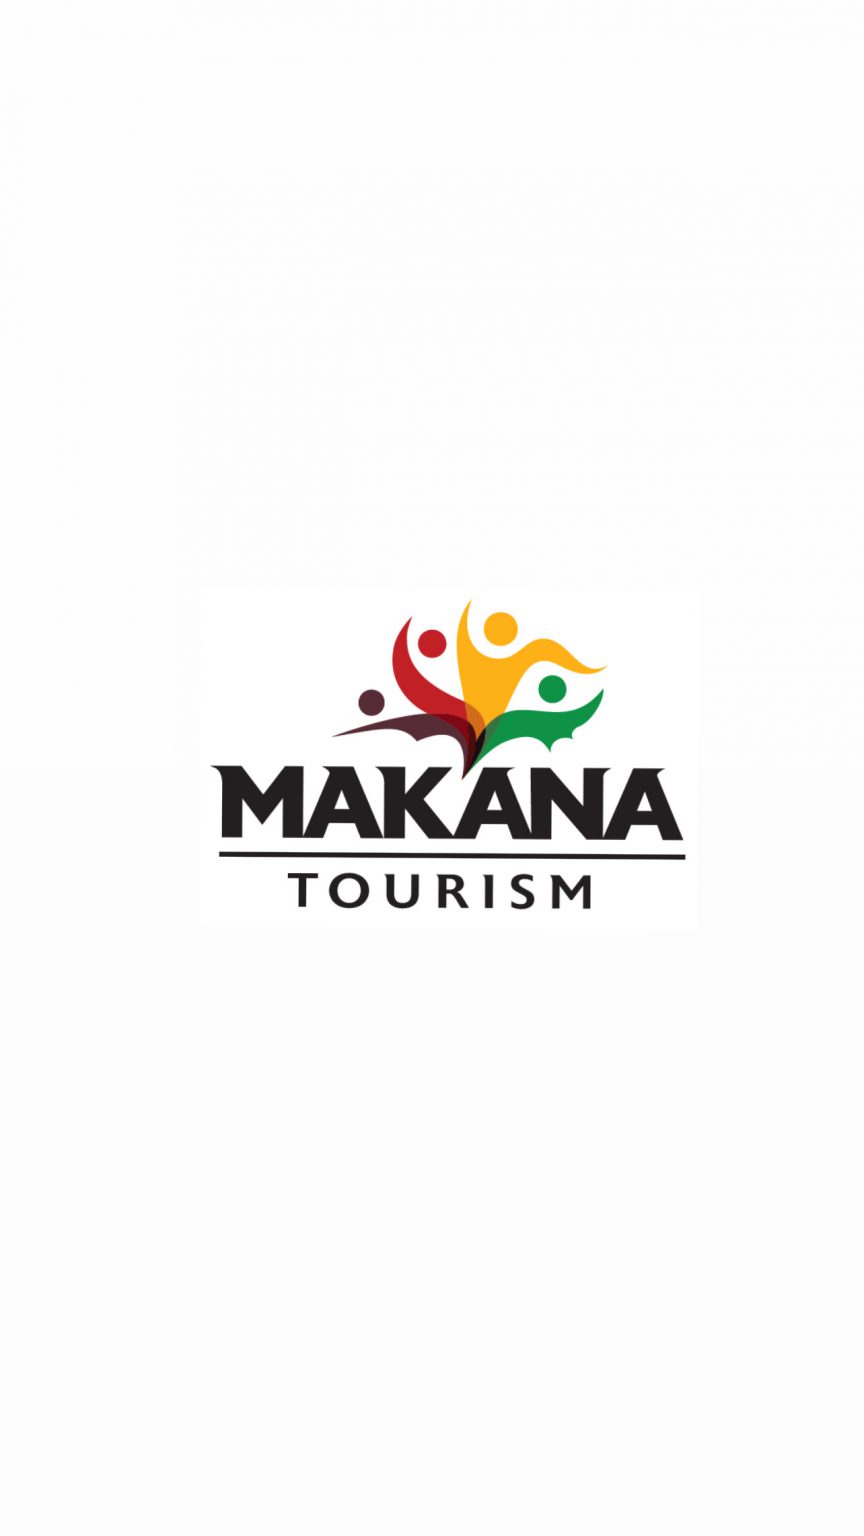 Makana Tourism